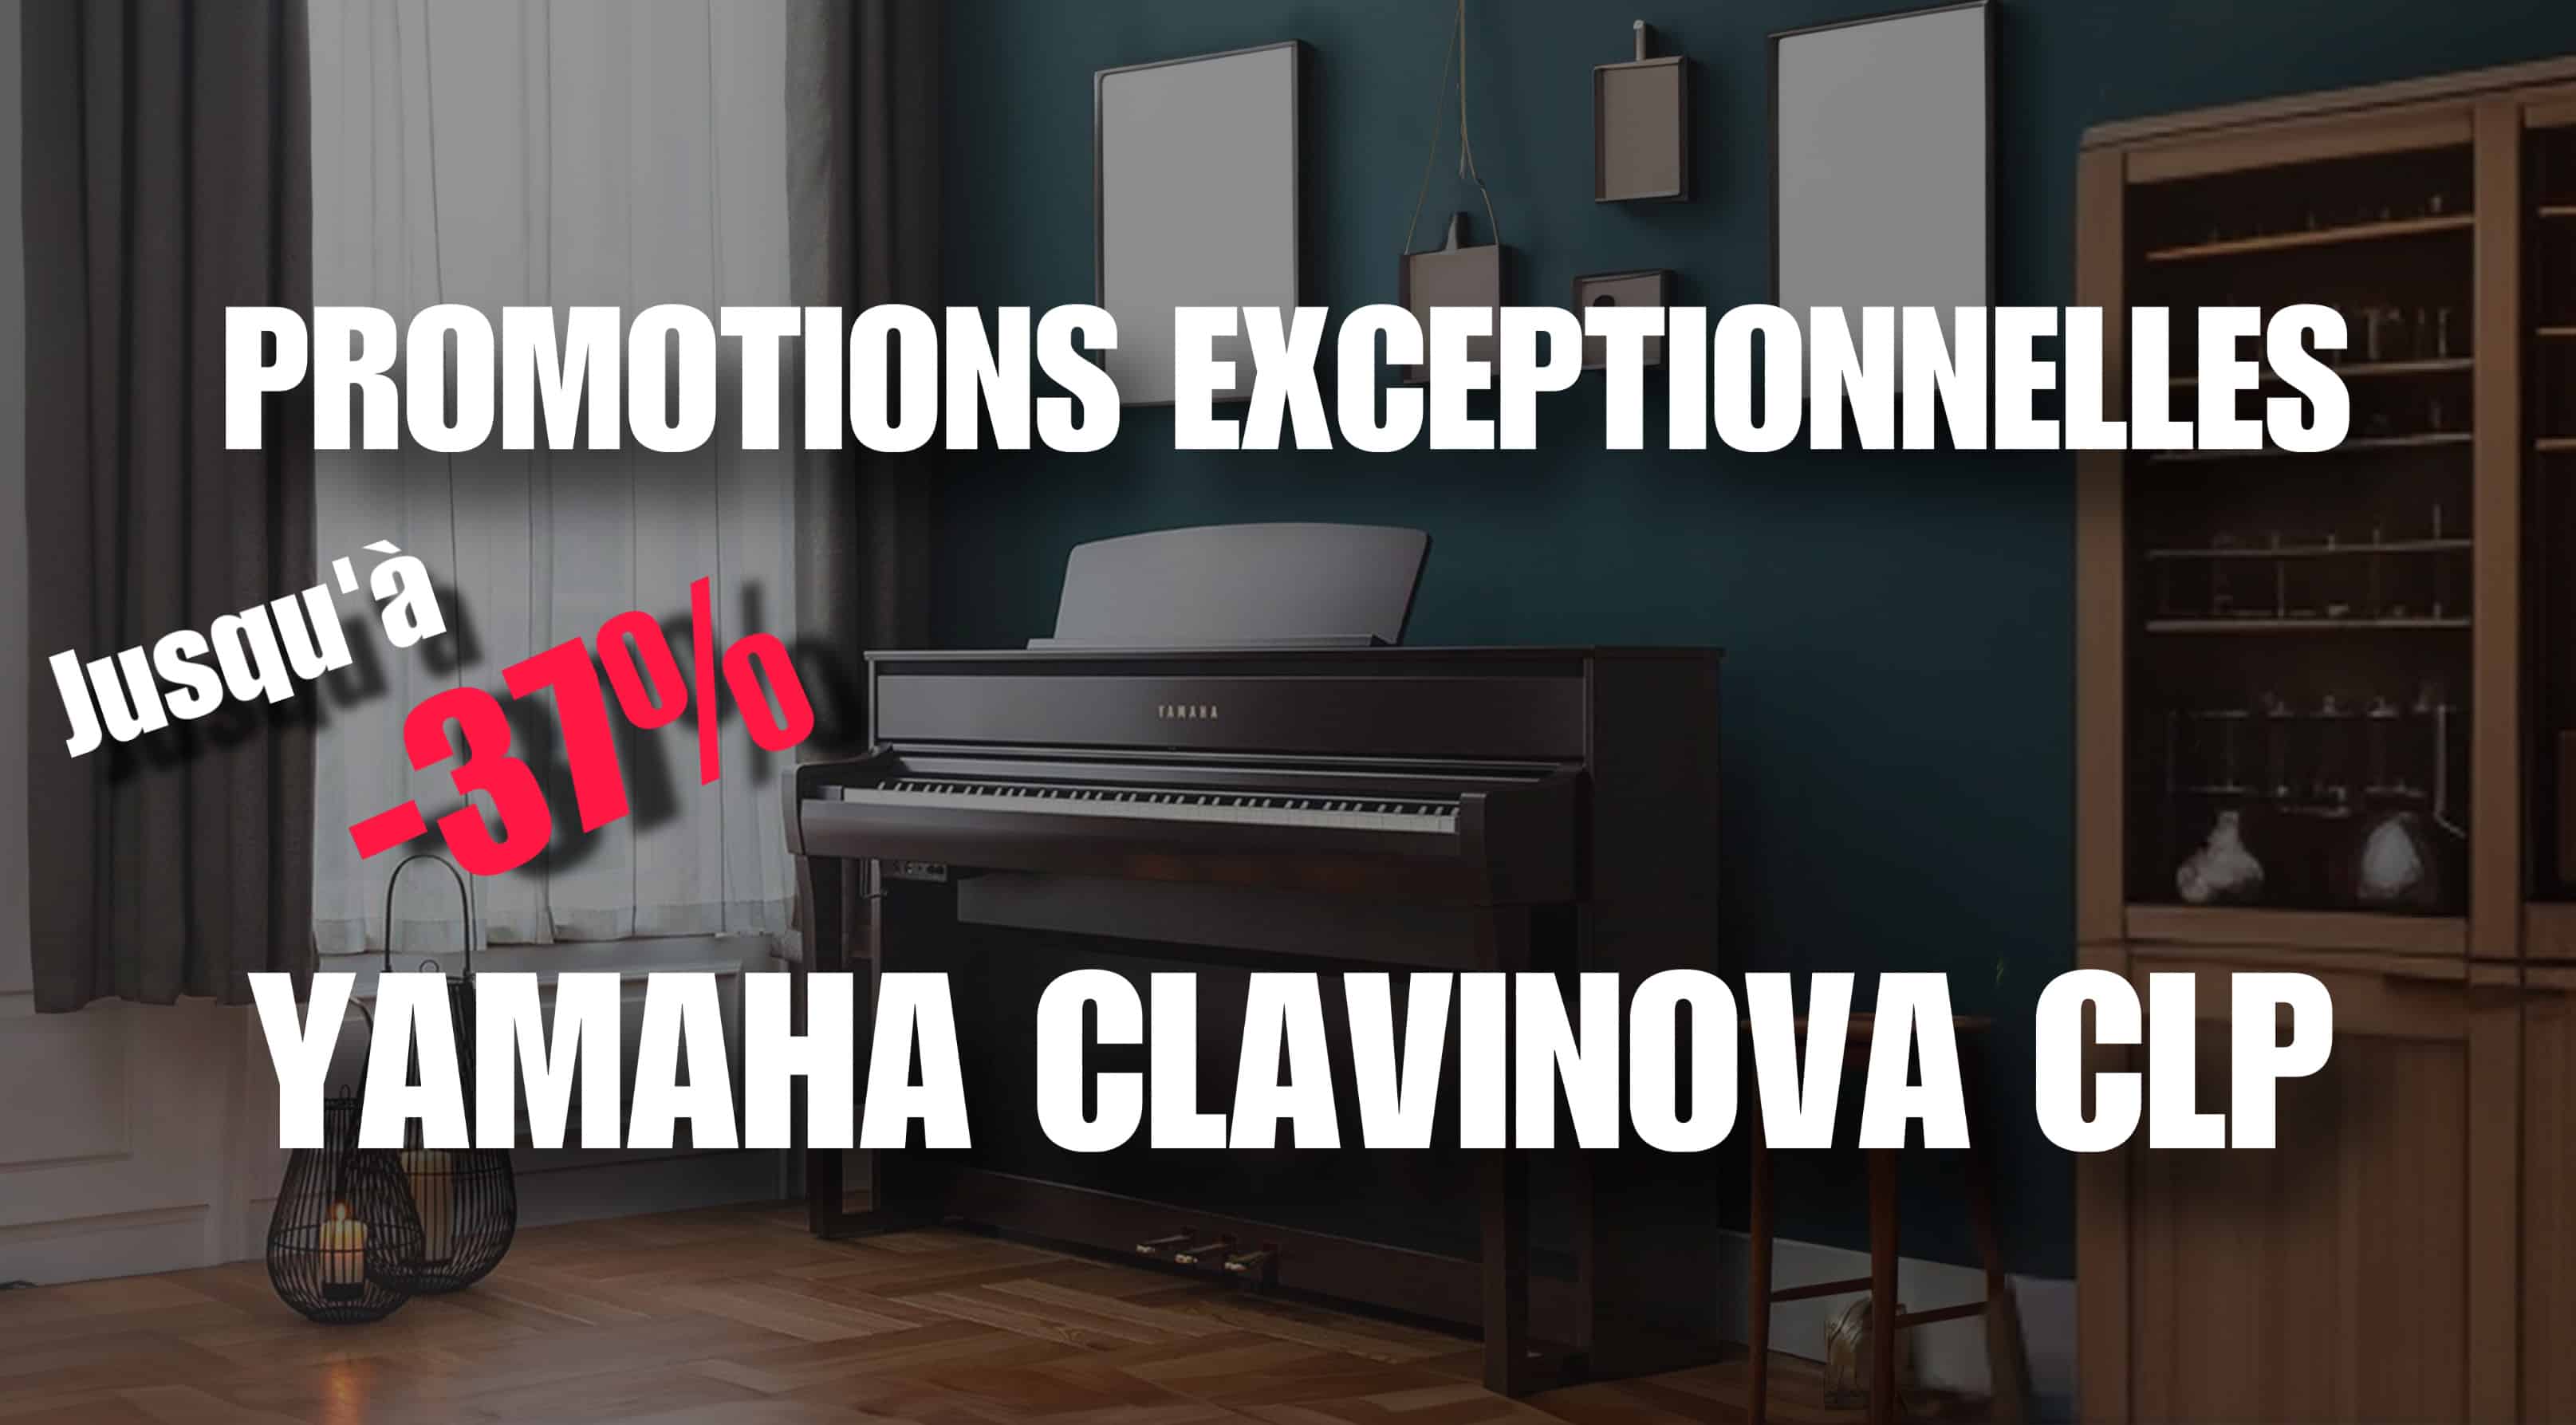 Promotions exceptionnelles sur les Yamaha Clavinova CLP ! ⏱️